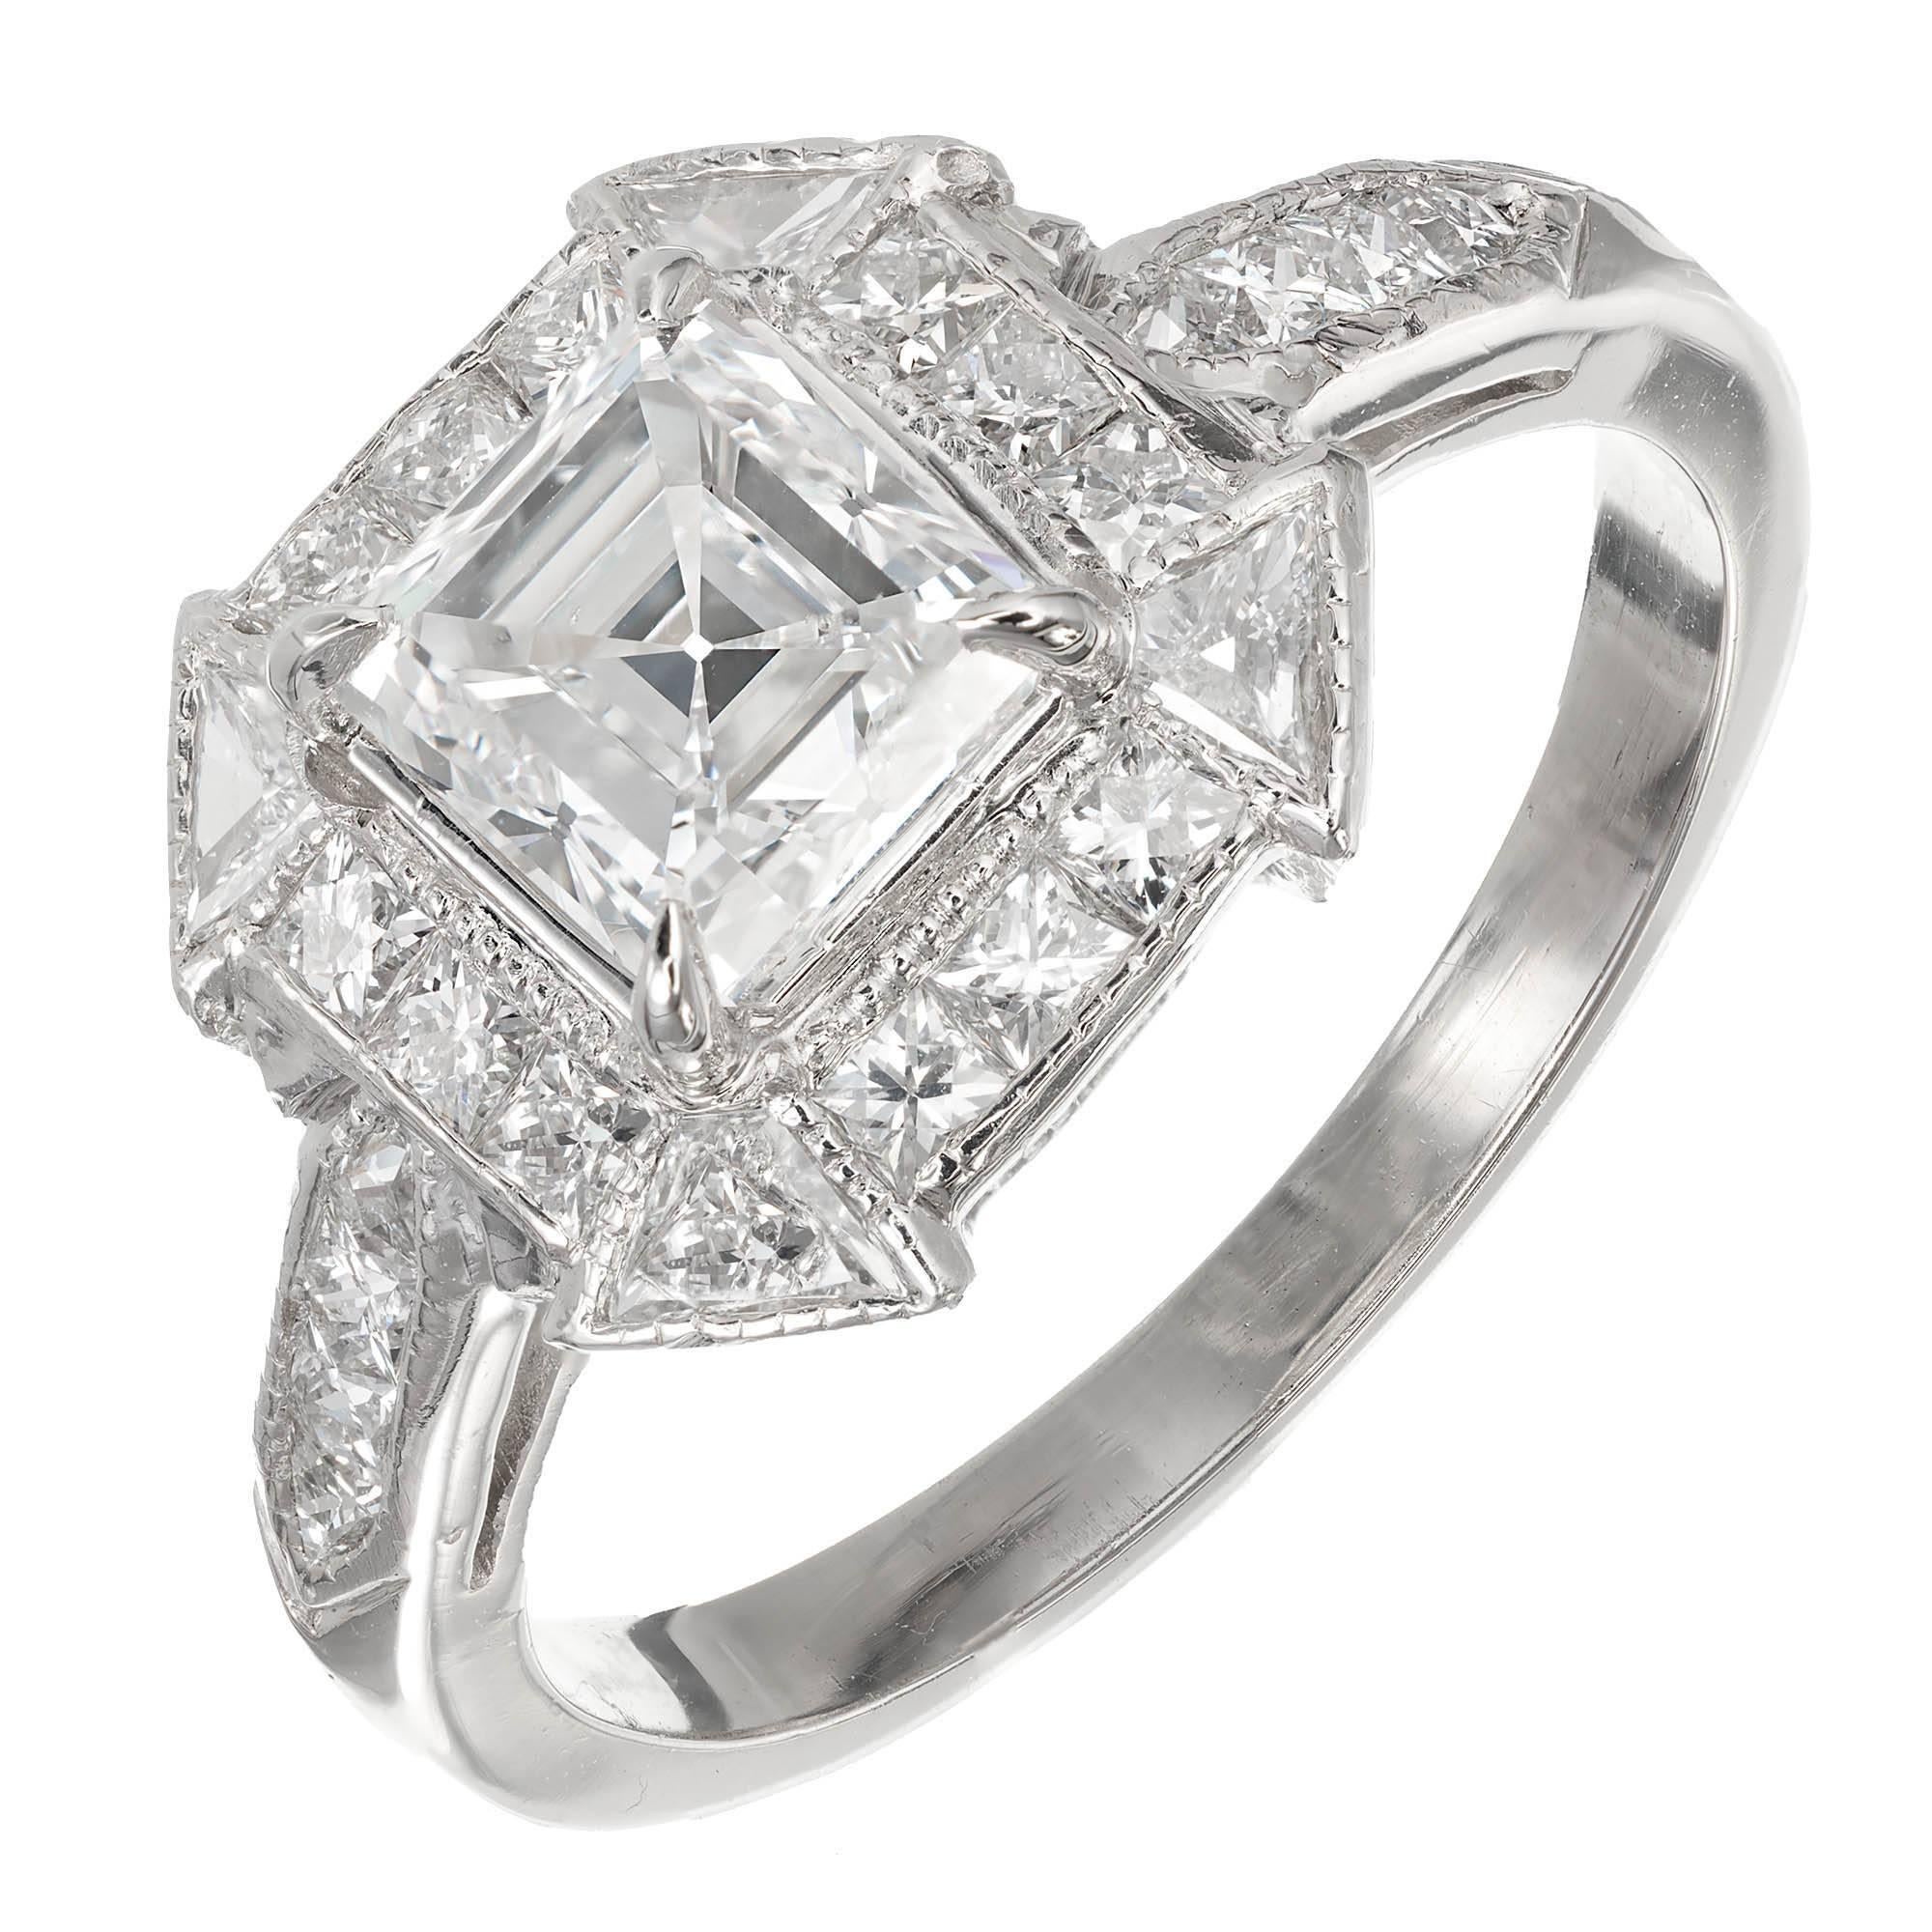 Peter Suchy 1.21 Carat Asscher Cut Diamond Platinum Engagement Ring For Sale